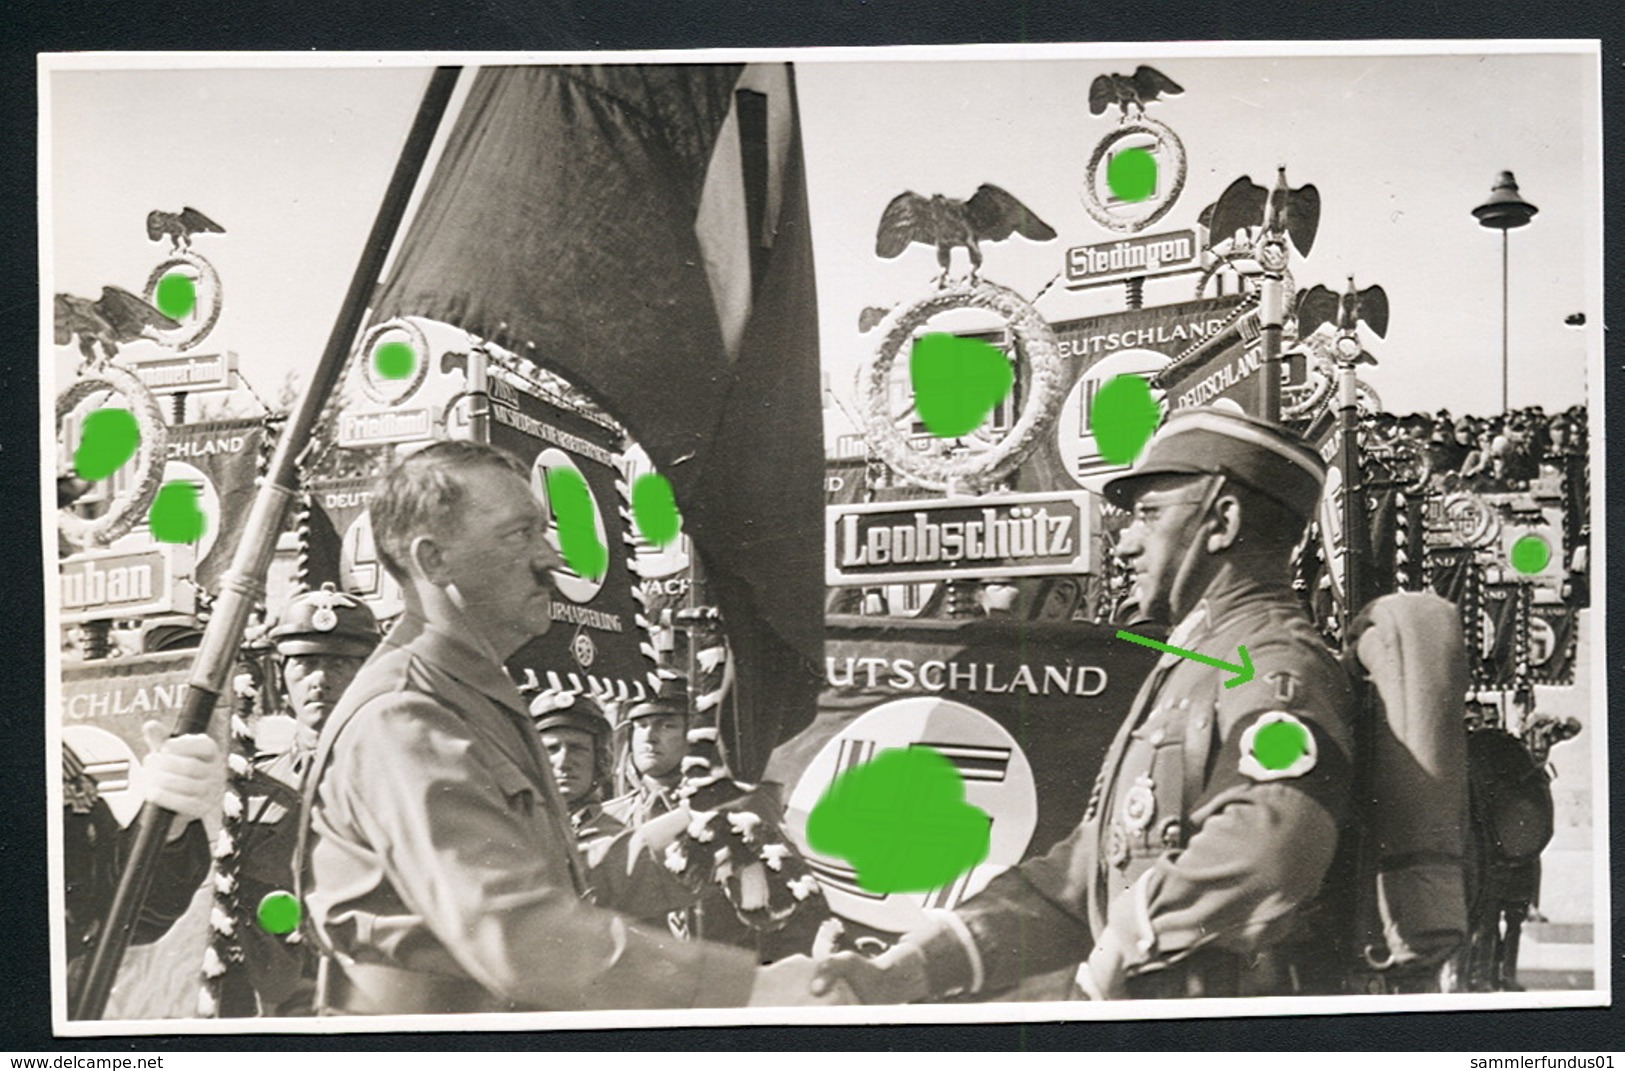 Foto AK/CP Reichsparteitag Nürnberg Hitler  Propaganda  Nazi  Ungel/uncirc. 1933-38   Erhaltung/Cond. 2  Nr. 00586 - Oorlog 1939-45